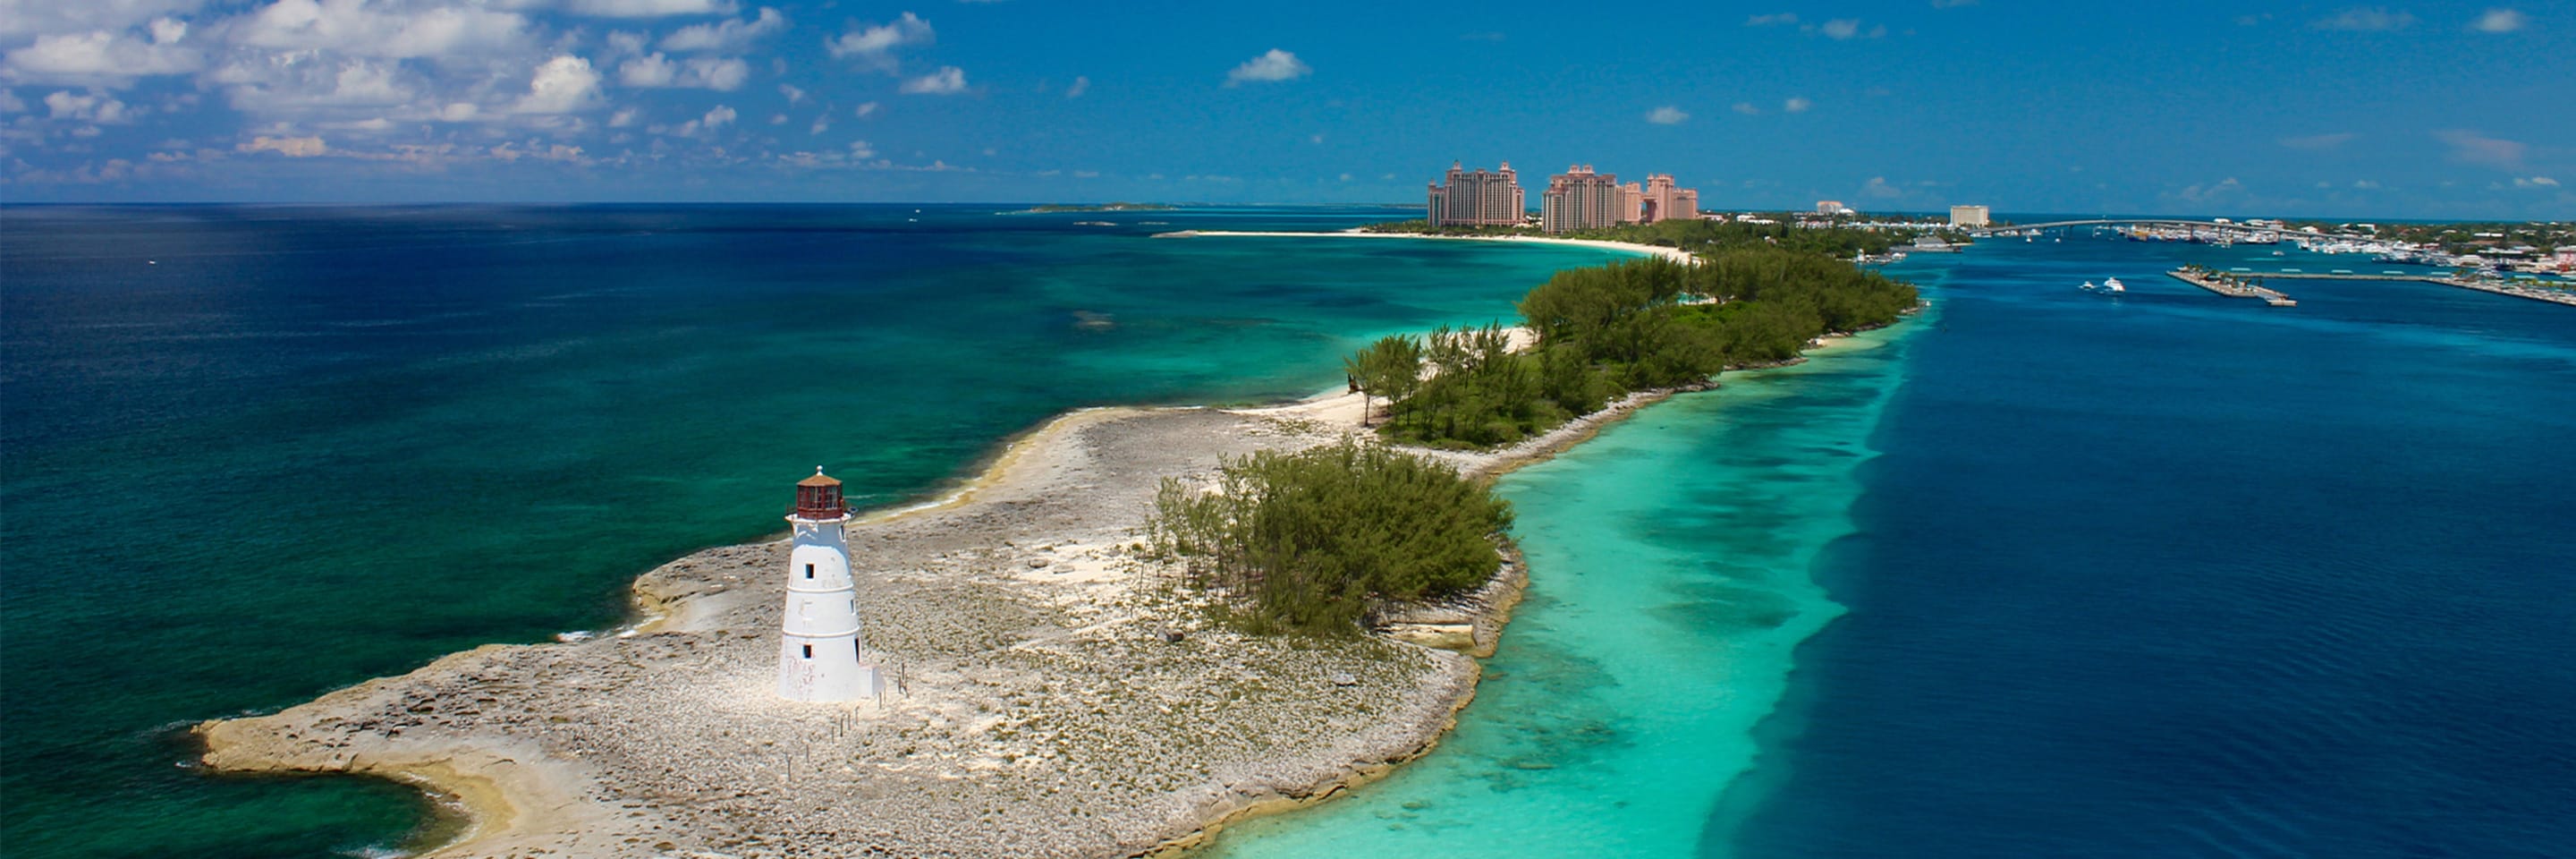 Hôtels dans les Bahamas
